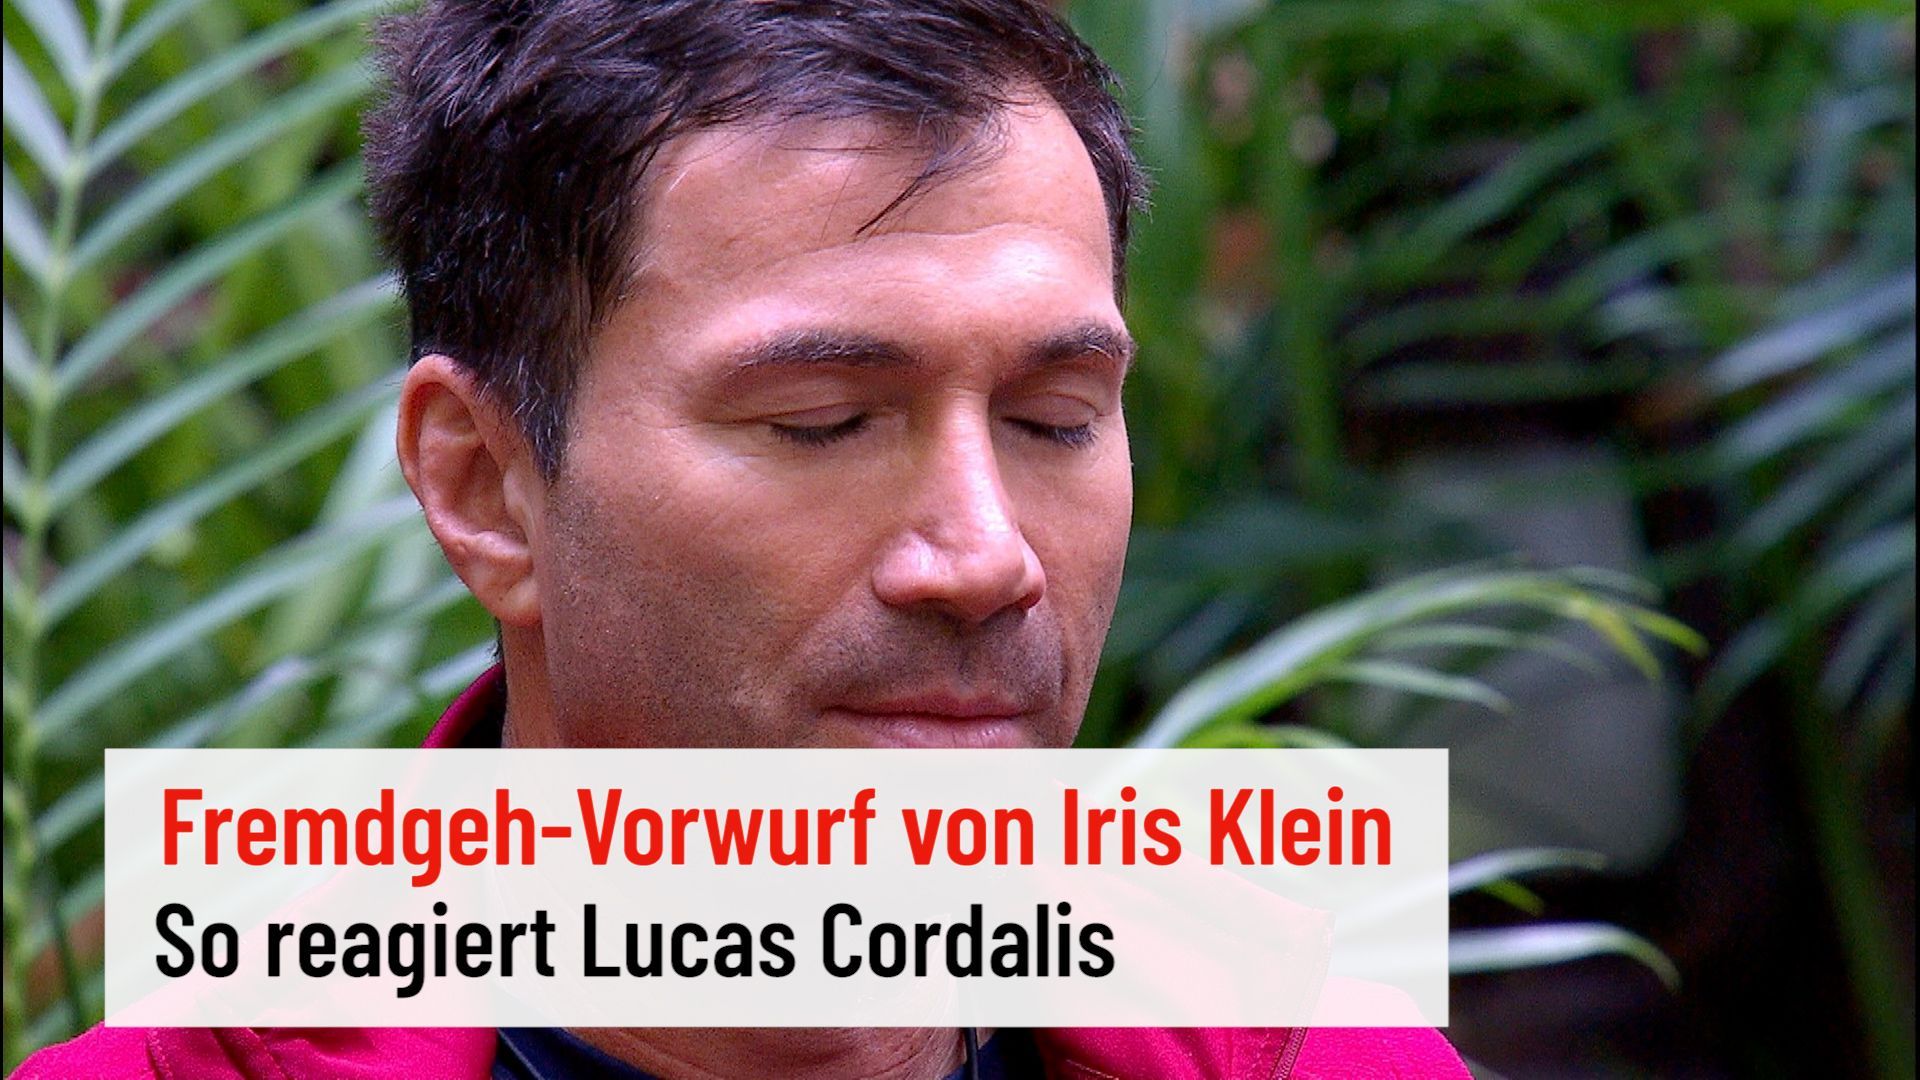 Lucas Cordalis reacts to the cheating rumors of Iris Klein